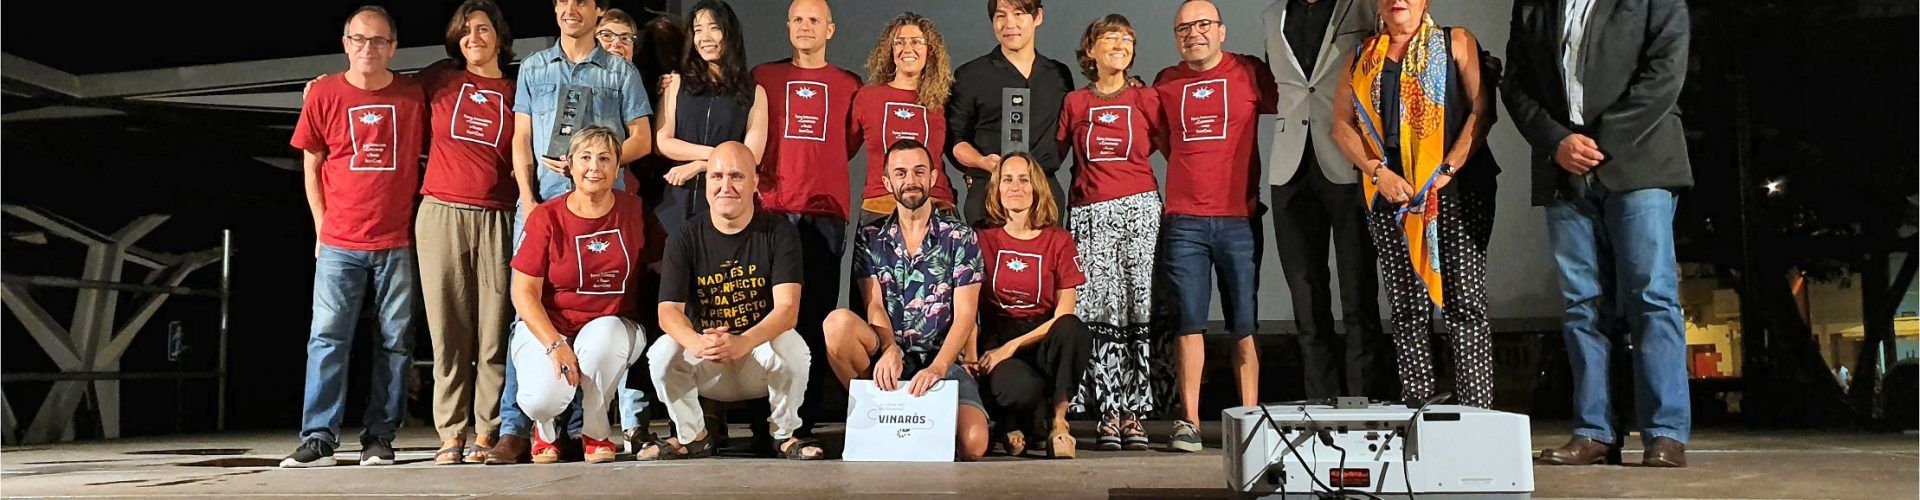 Los ganadores del XVIII Festival Internacional de Cortos de Vinaròs alaban la calidad y cantidad de participantes